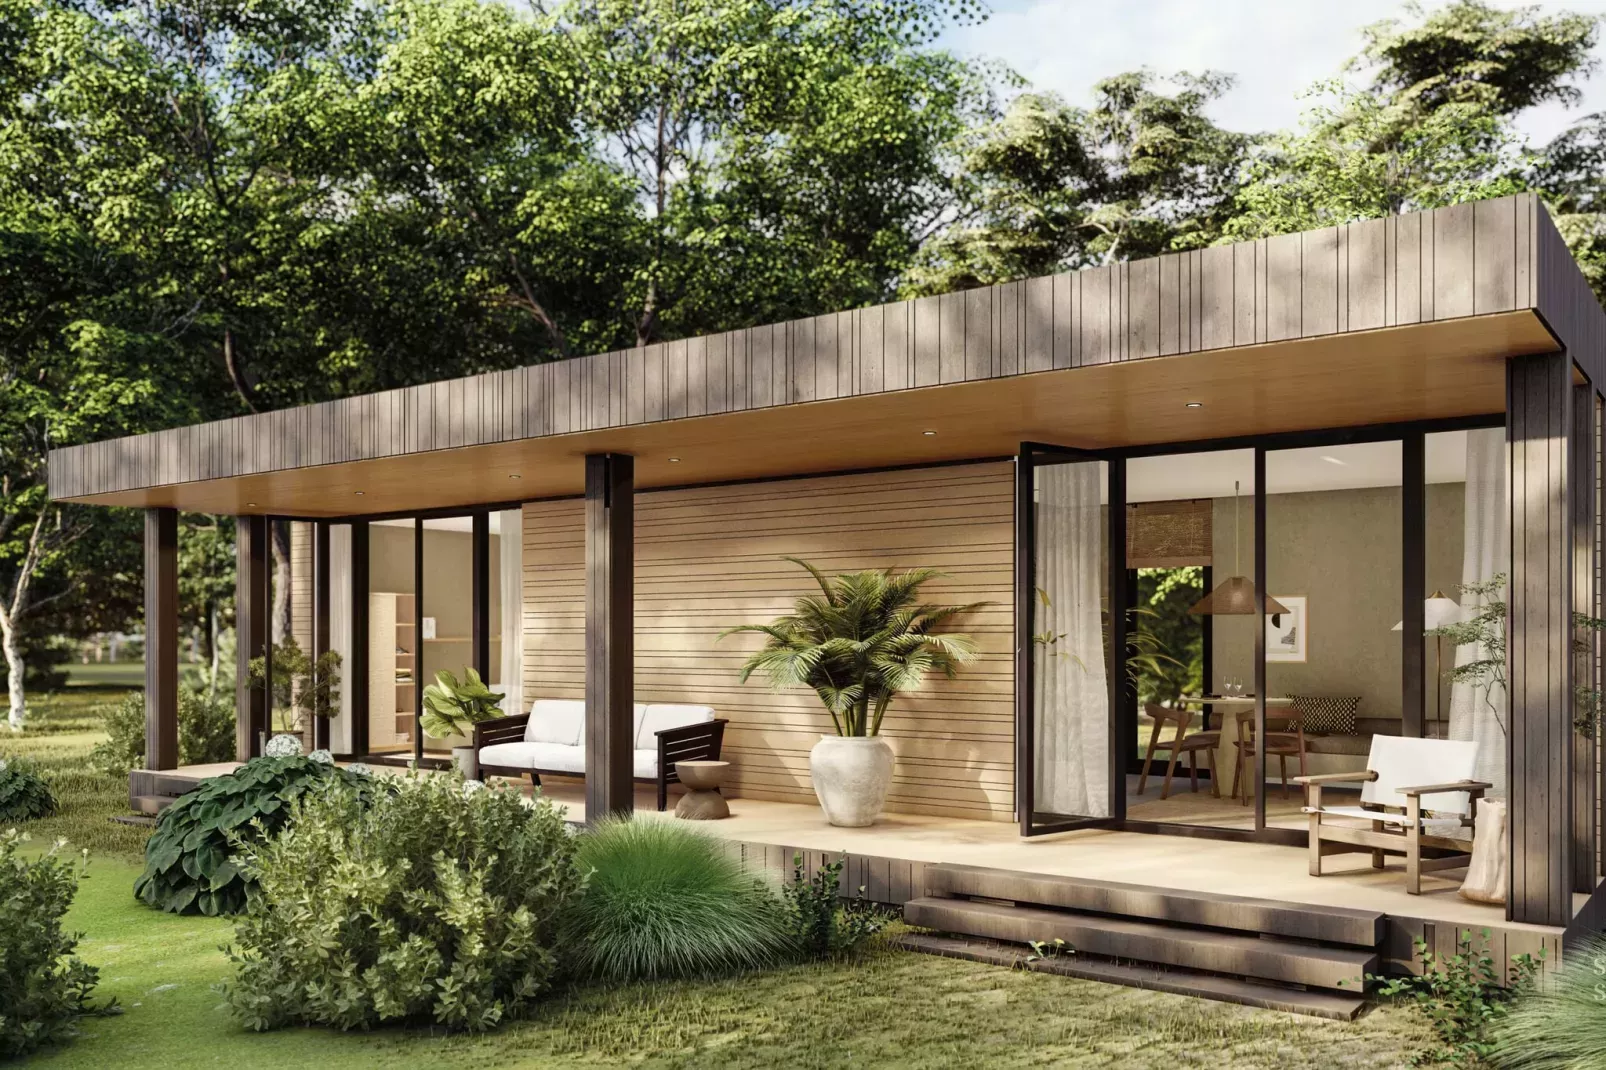 luxe houten vakantiehuis met plant op terras en omring door groene omgeving, met een glazen deur om naar binnen te komen